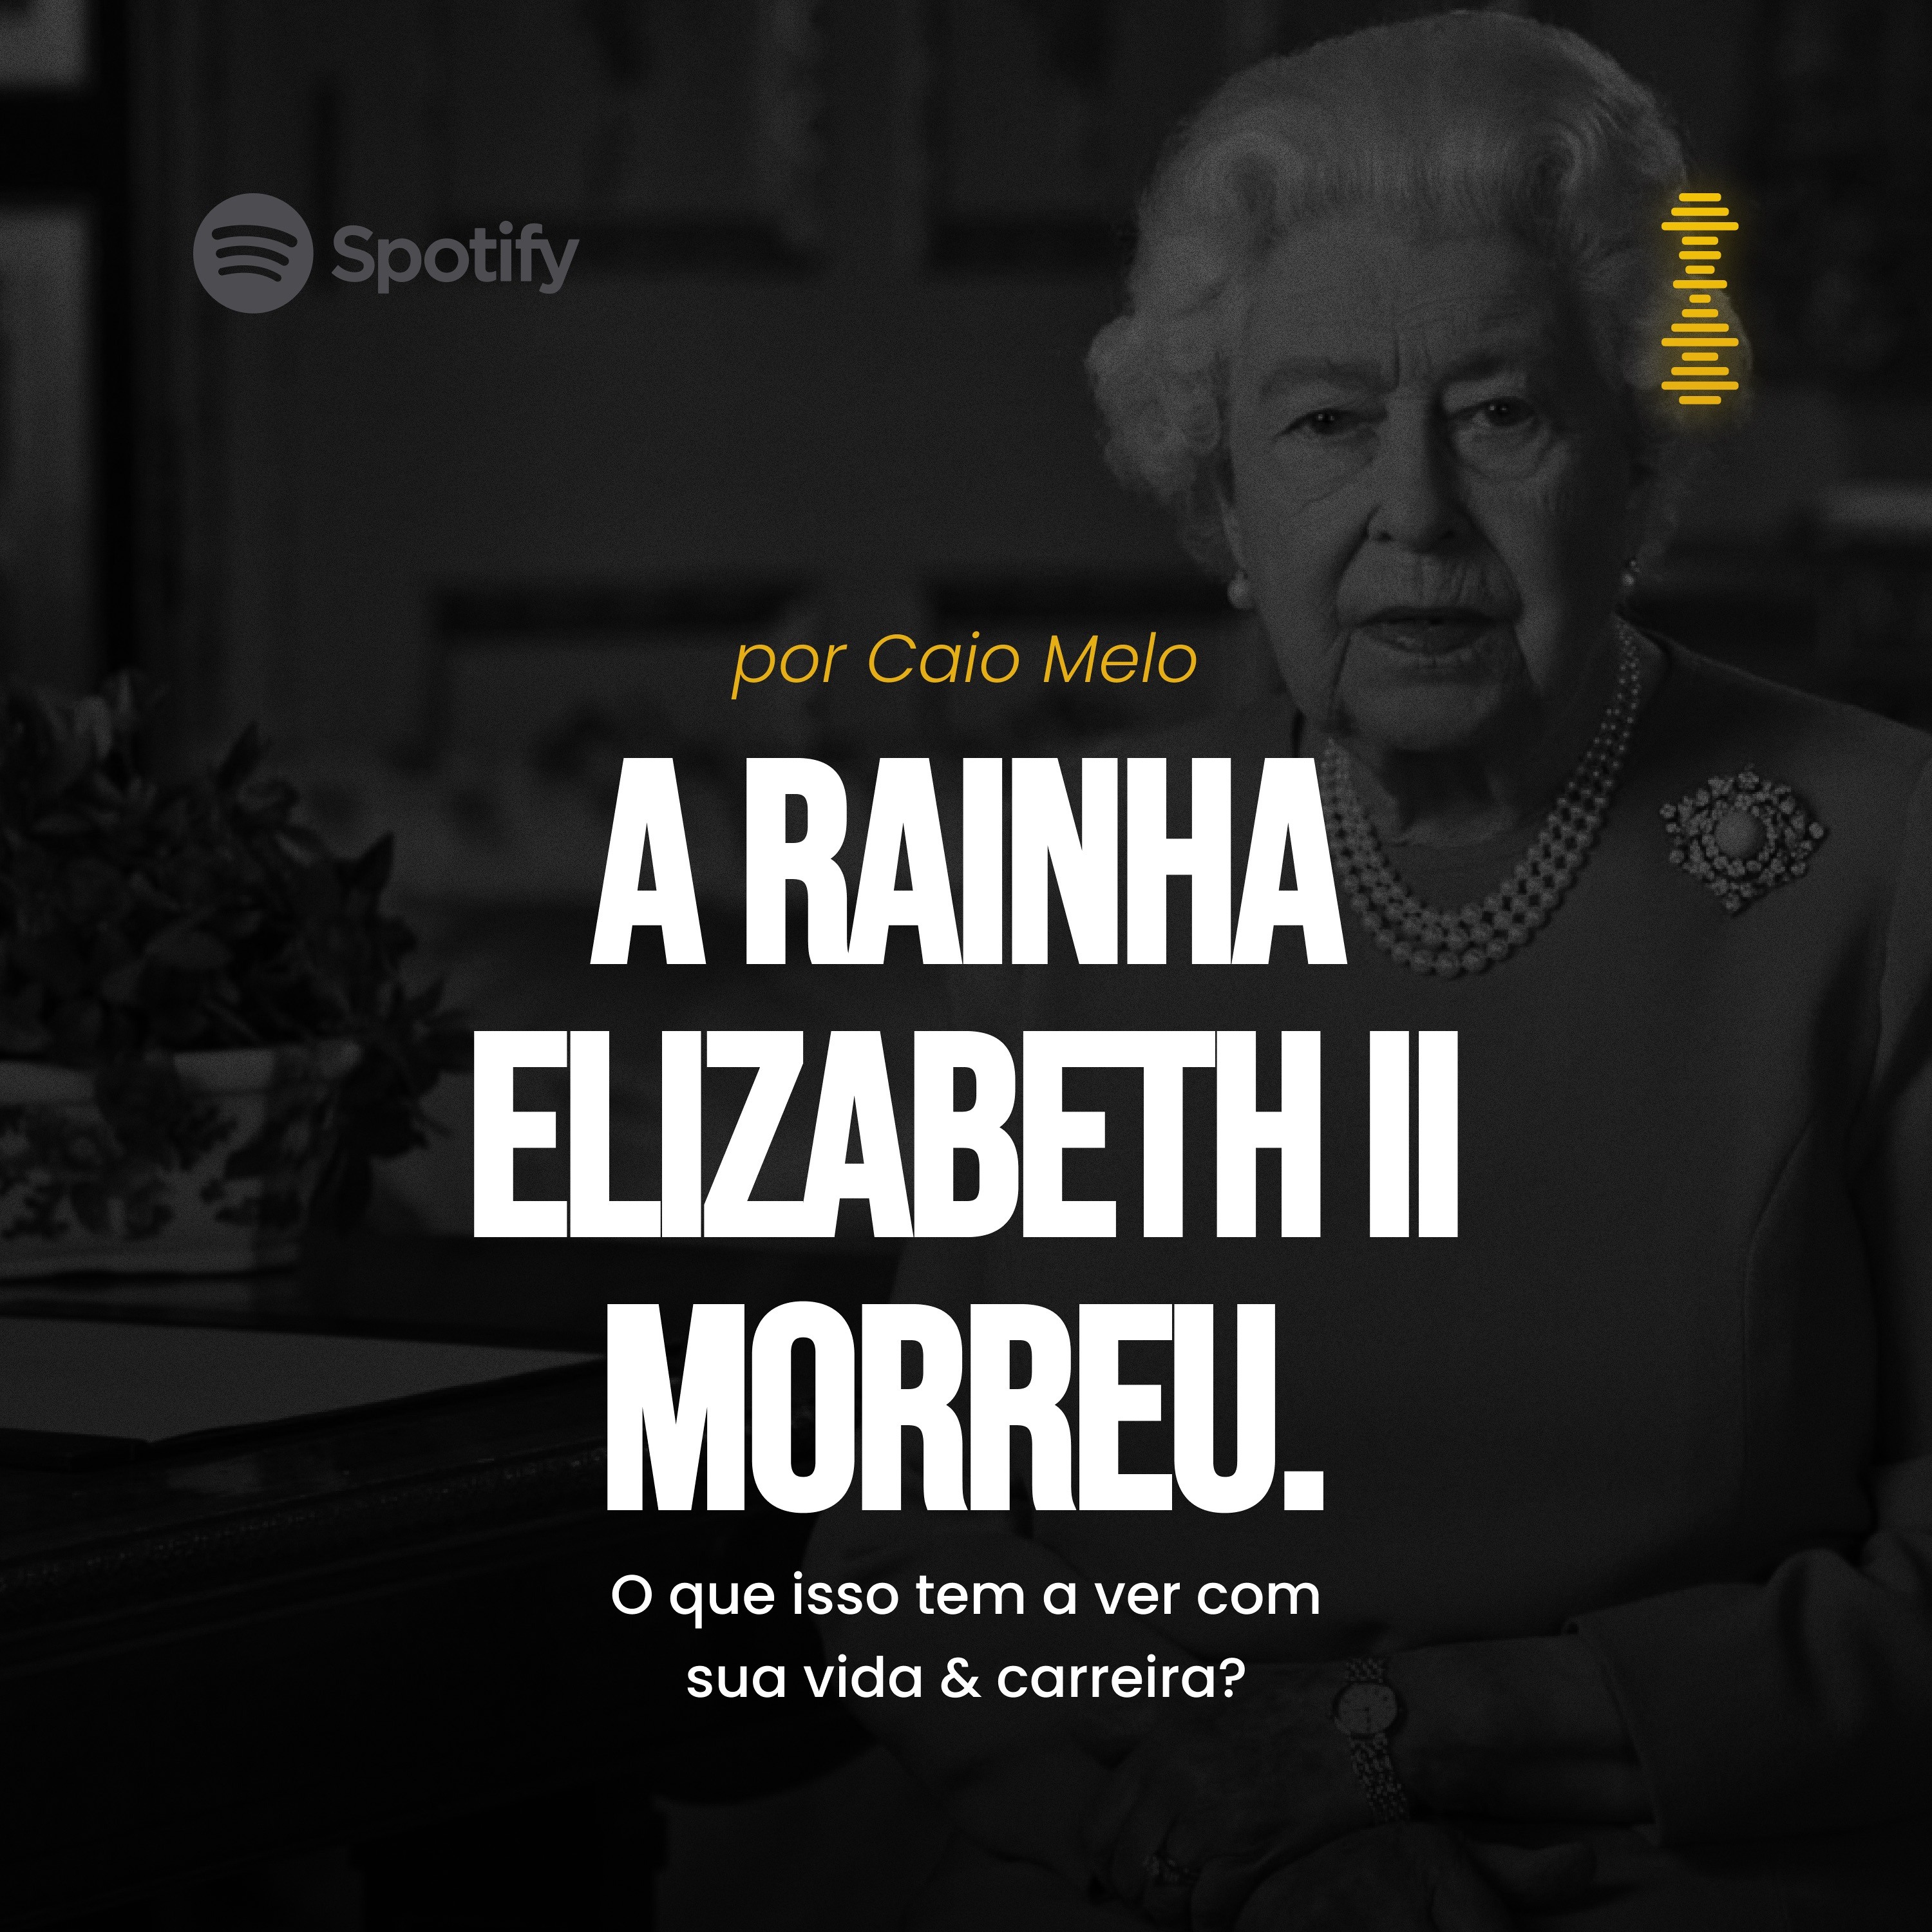 A Rainha Elizabeth II morreu. O que isso tem a ver com sua vida & carreira